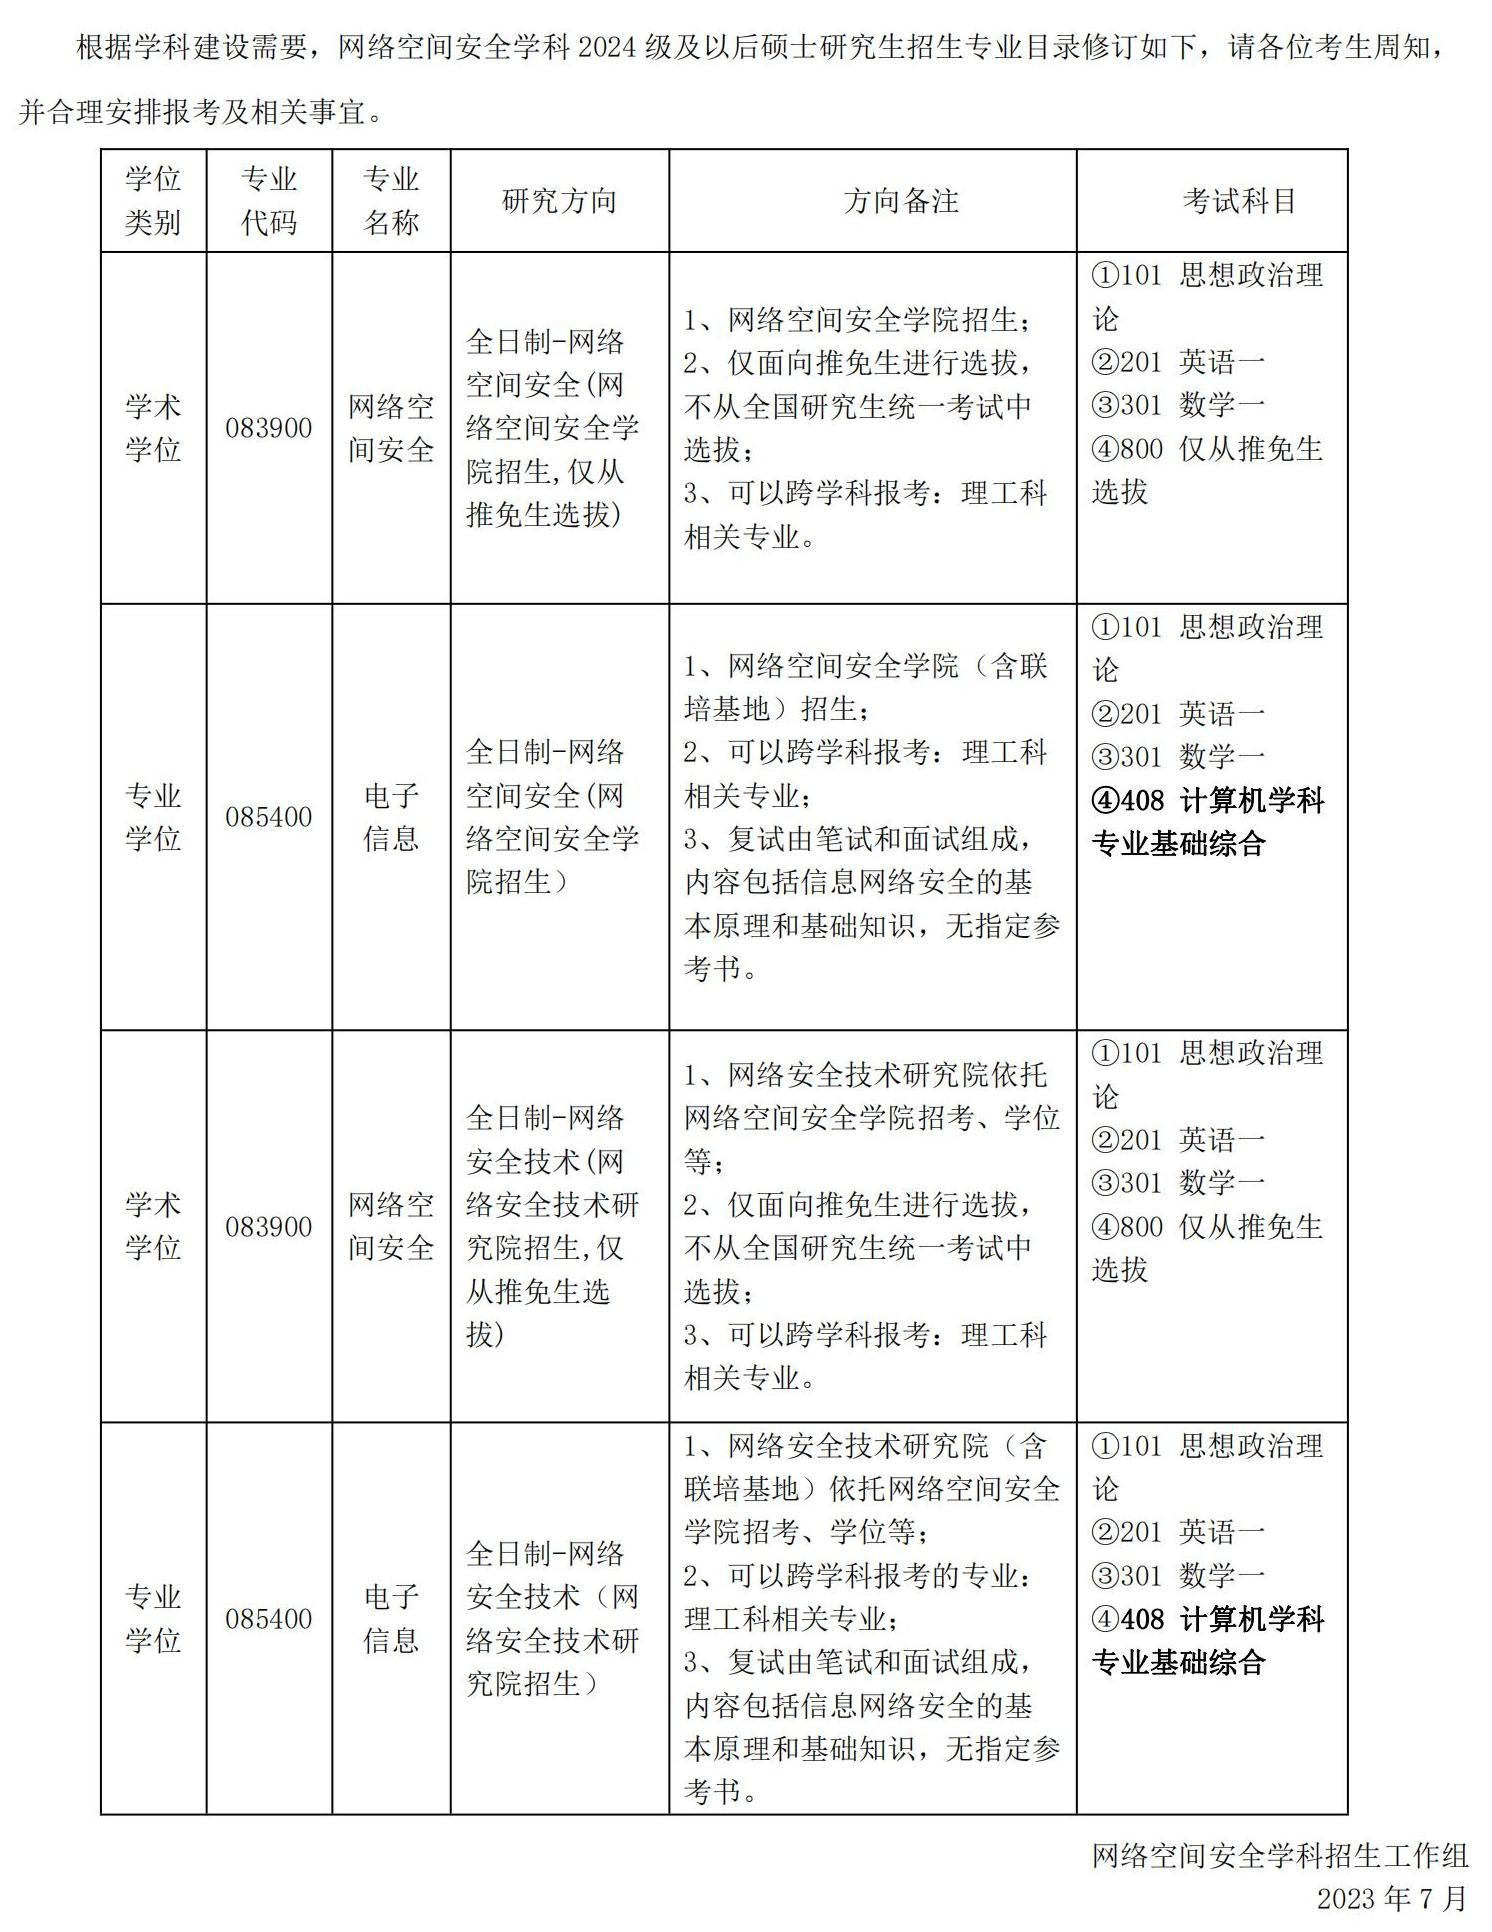 上海交通大学网络空间安全学科硕士研究生招生专业目录修订公告